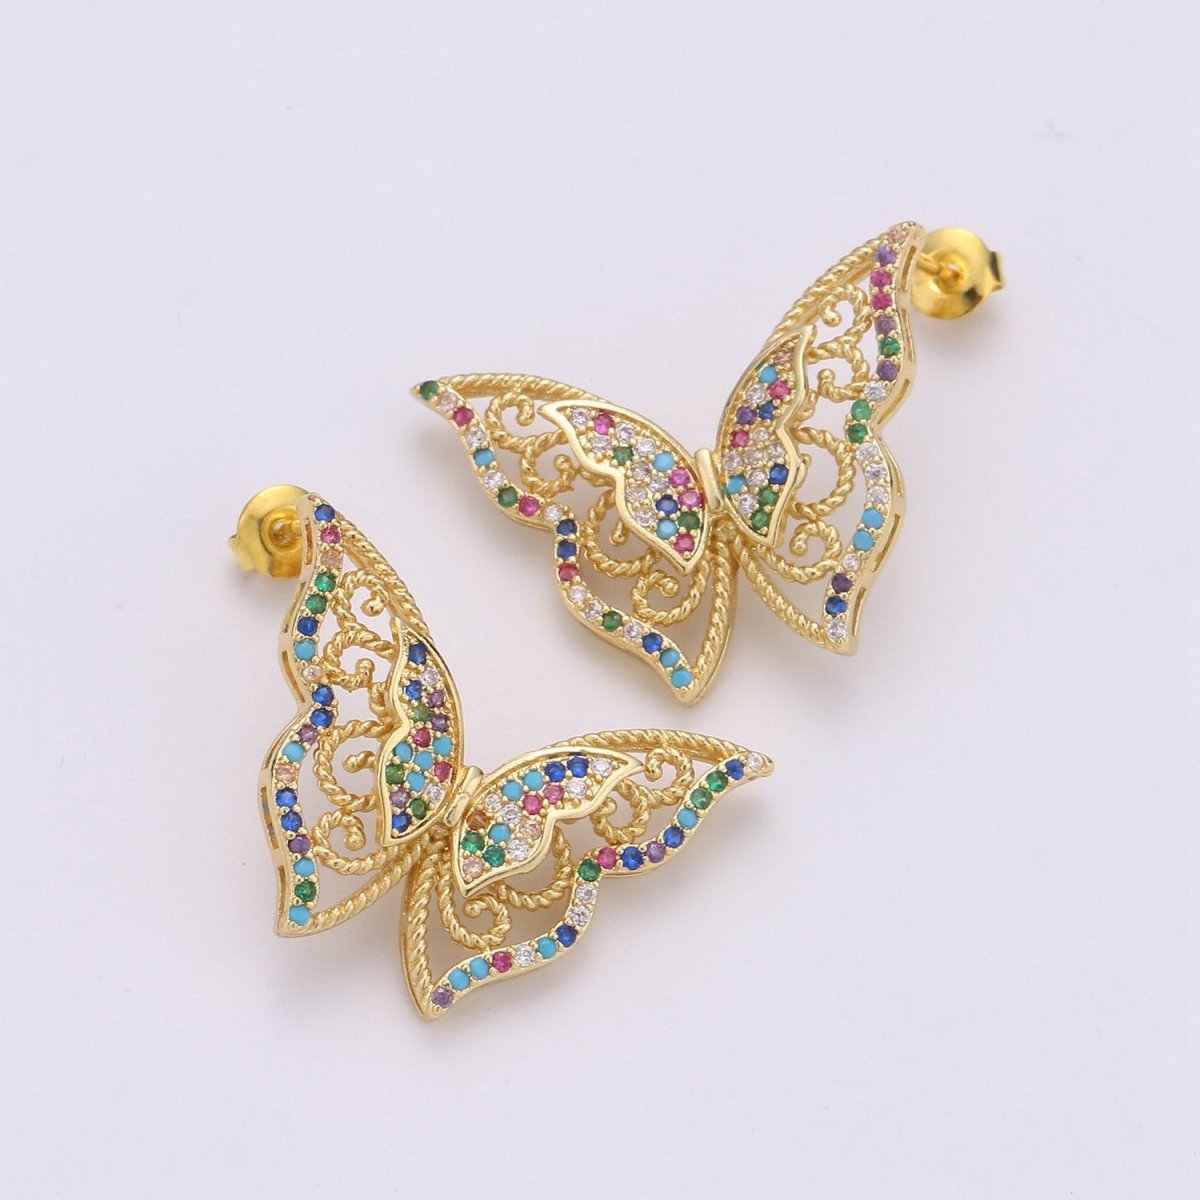 Butterfly earrings, Mariposa Butterfly stud earrings, Statement earrings, Micro Pave Stud delicate studs, gold earrings, Animal earrings Q-524 - DLUXCA